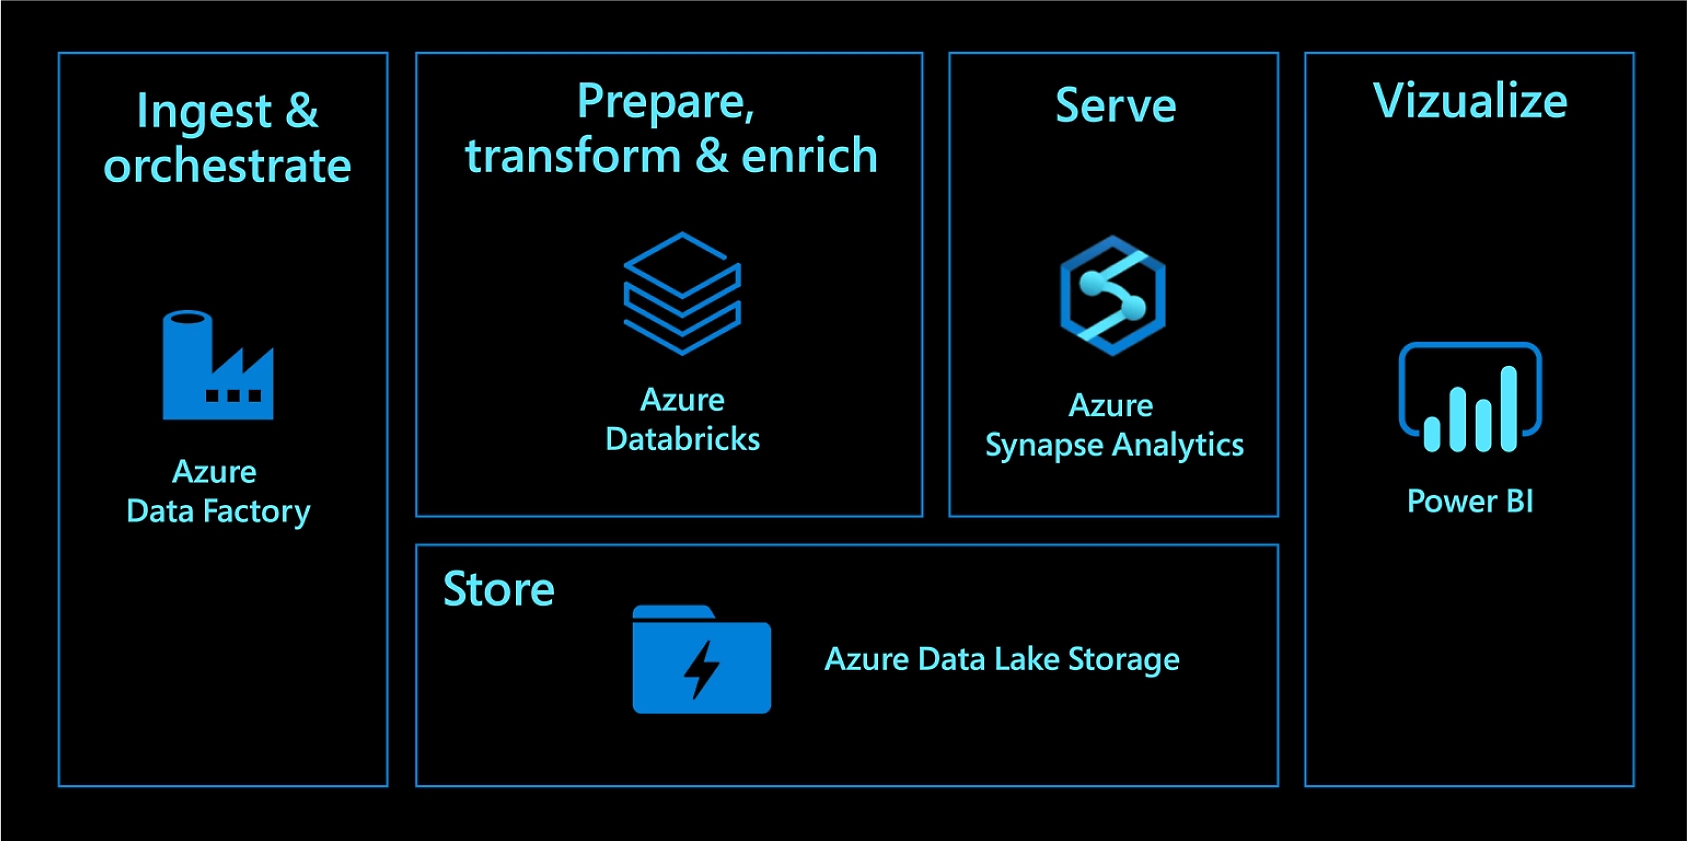 Ingestão e orquestração com o Azure Data Factory. Prepare, transforme e enriqueça com Azure Databricks. Ofereça serviços com o Azure Synapse Analytics. Armazene com o Azure Data Lake Storage. Visualize com o Power BI.